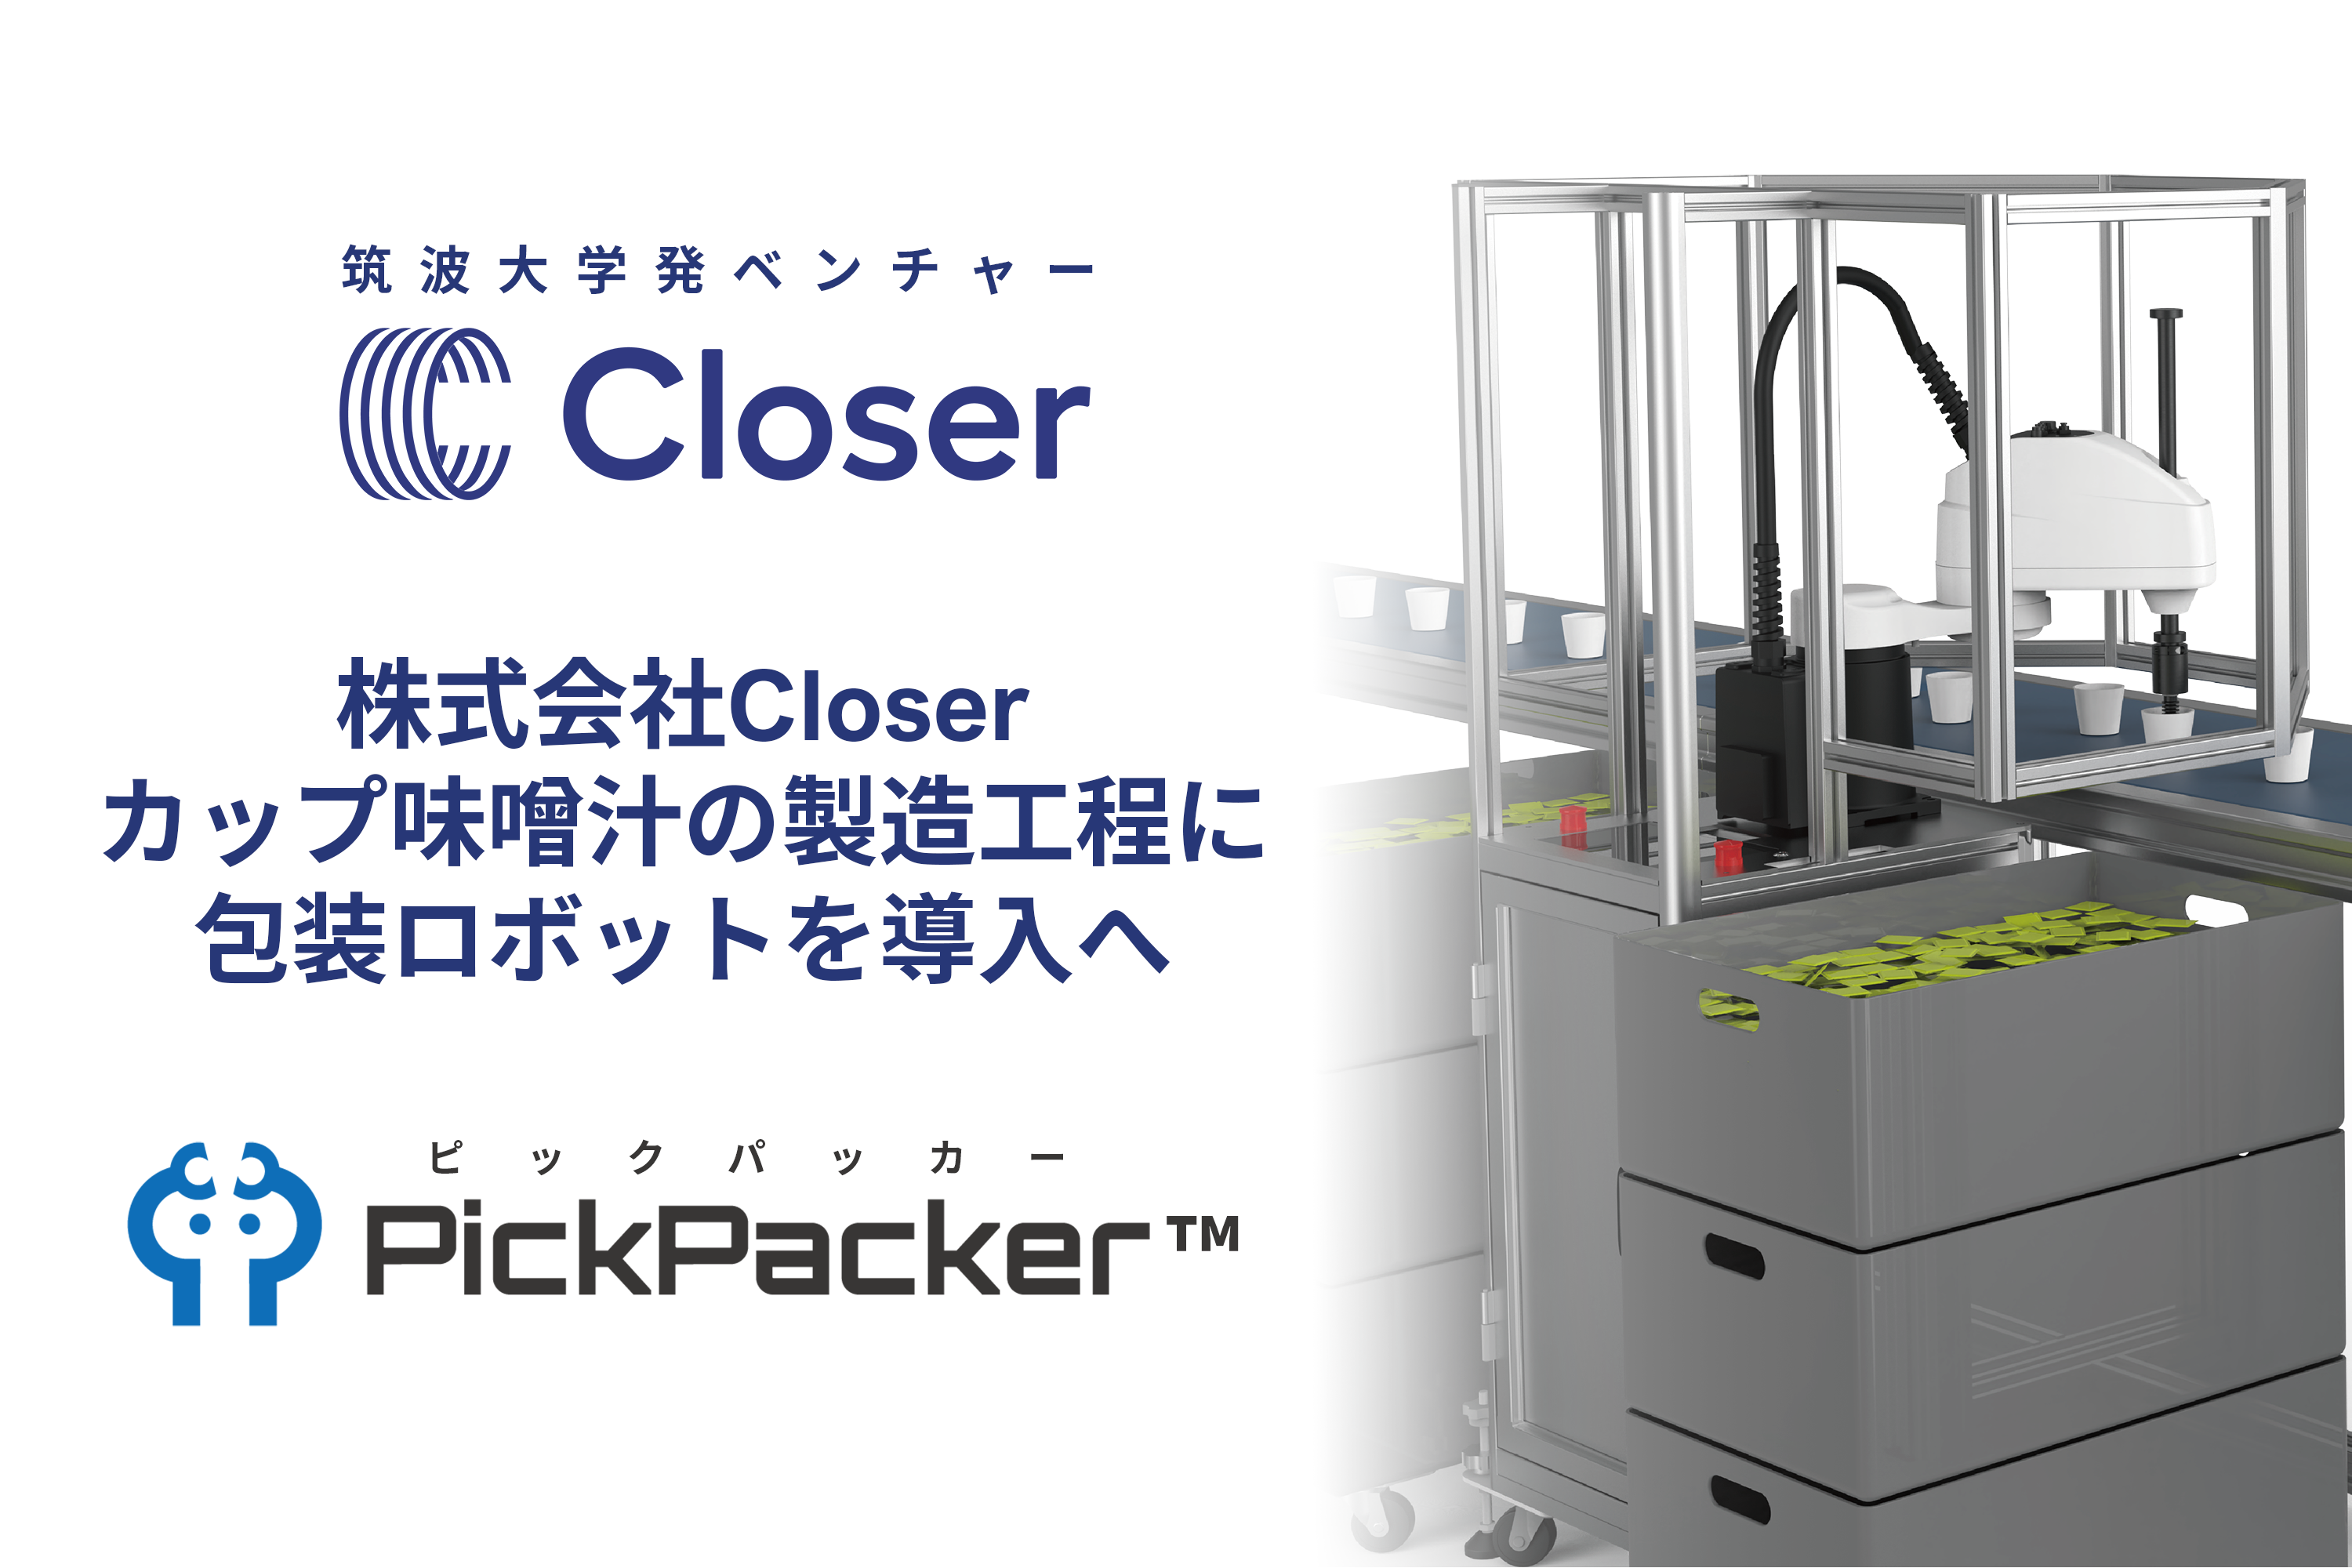 カップ味噌汁の製造工程を自動化、「PickPacker™（ピックパッカー）」を導入へ